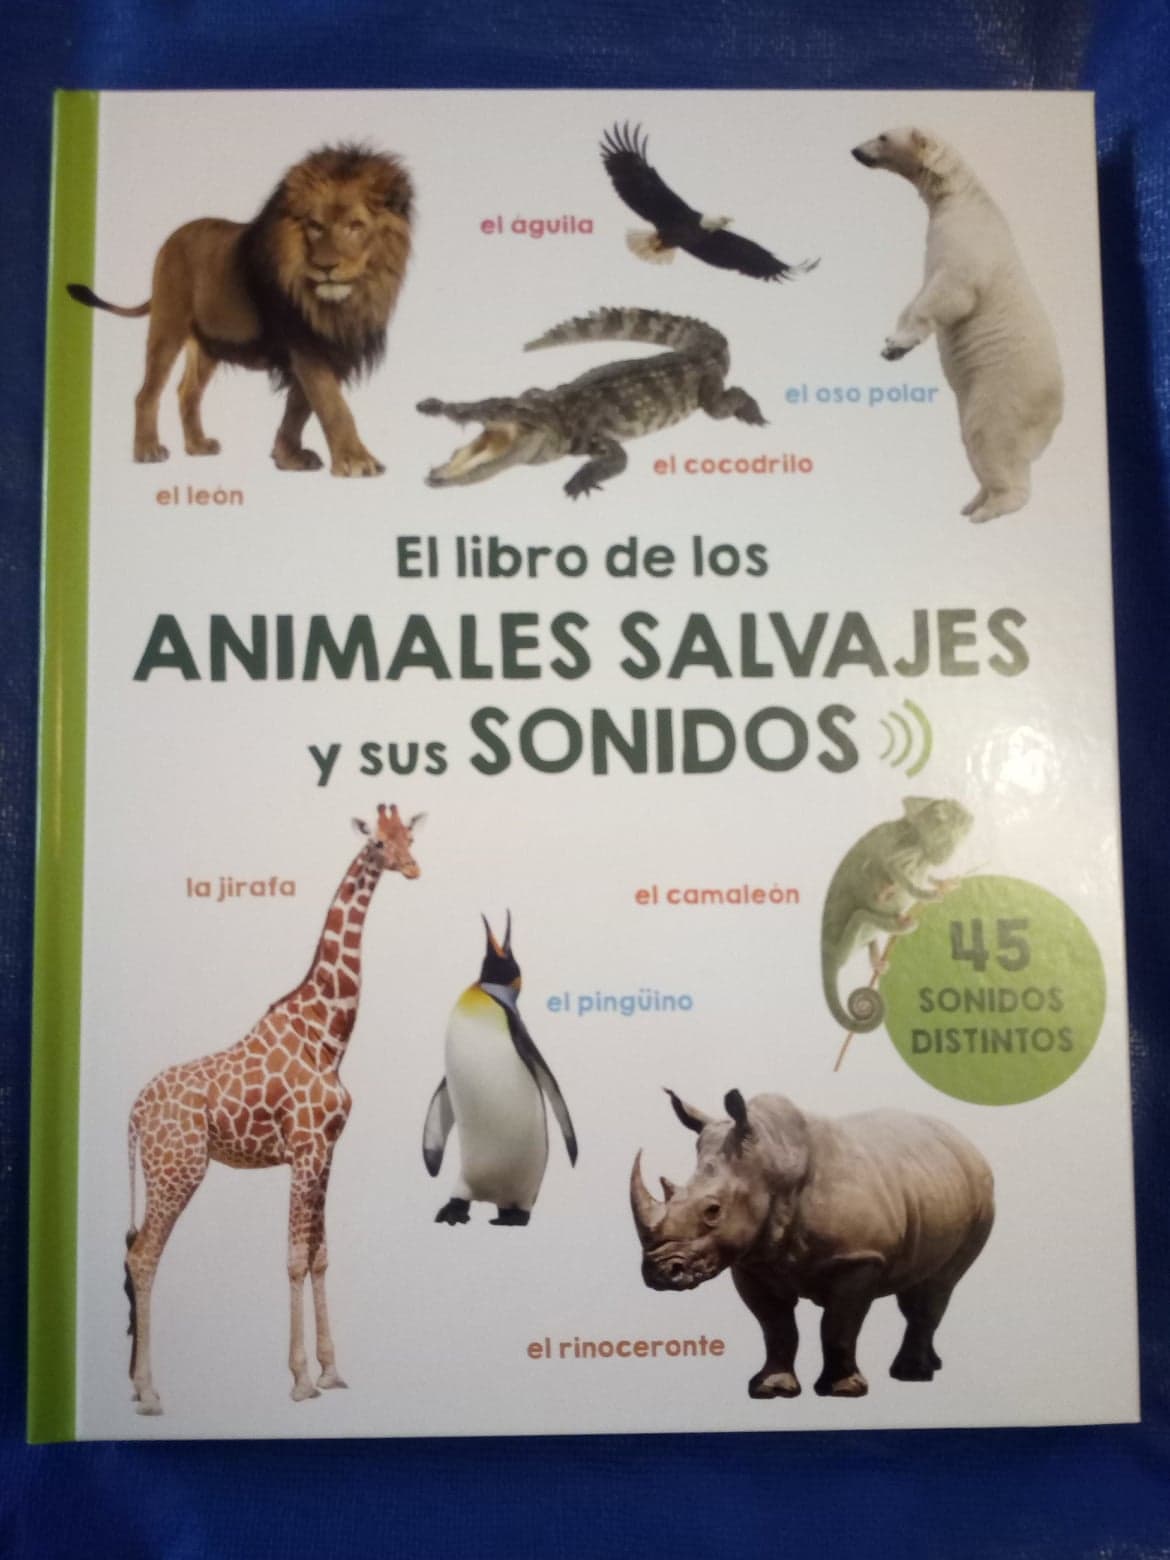 Distribución Extra Tropical El libro de los animales salvajes y sus sonidos - Cuentos de Amatxu